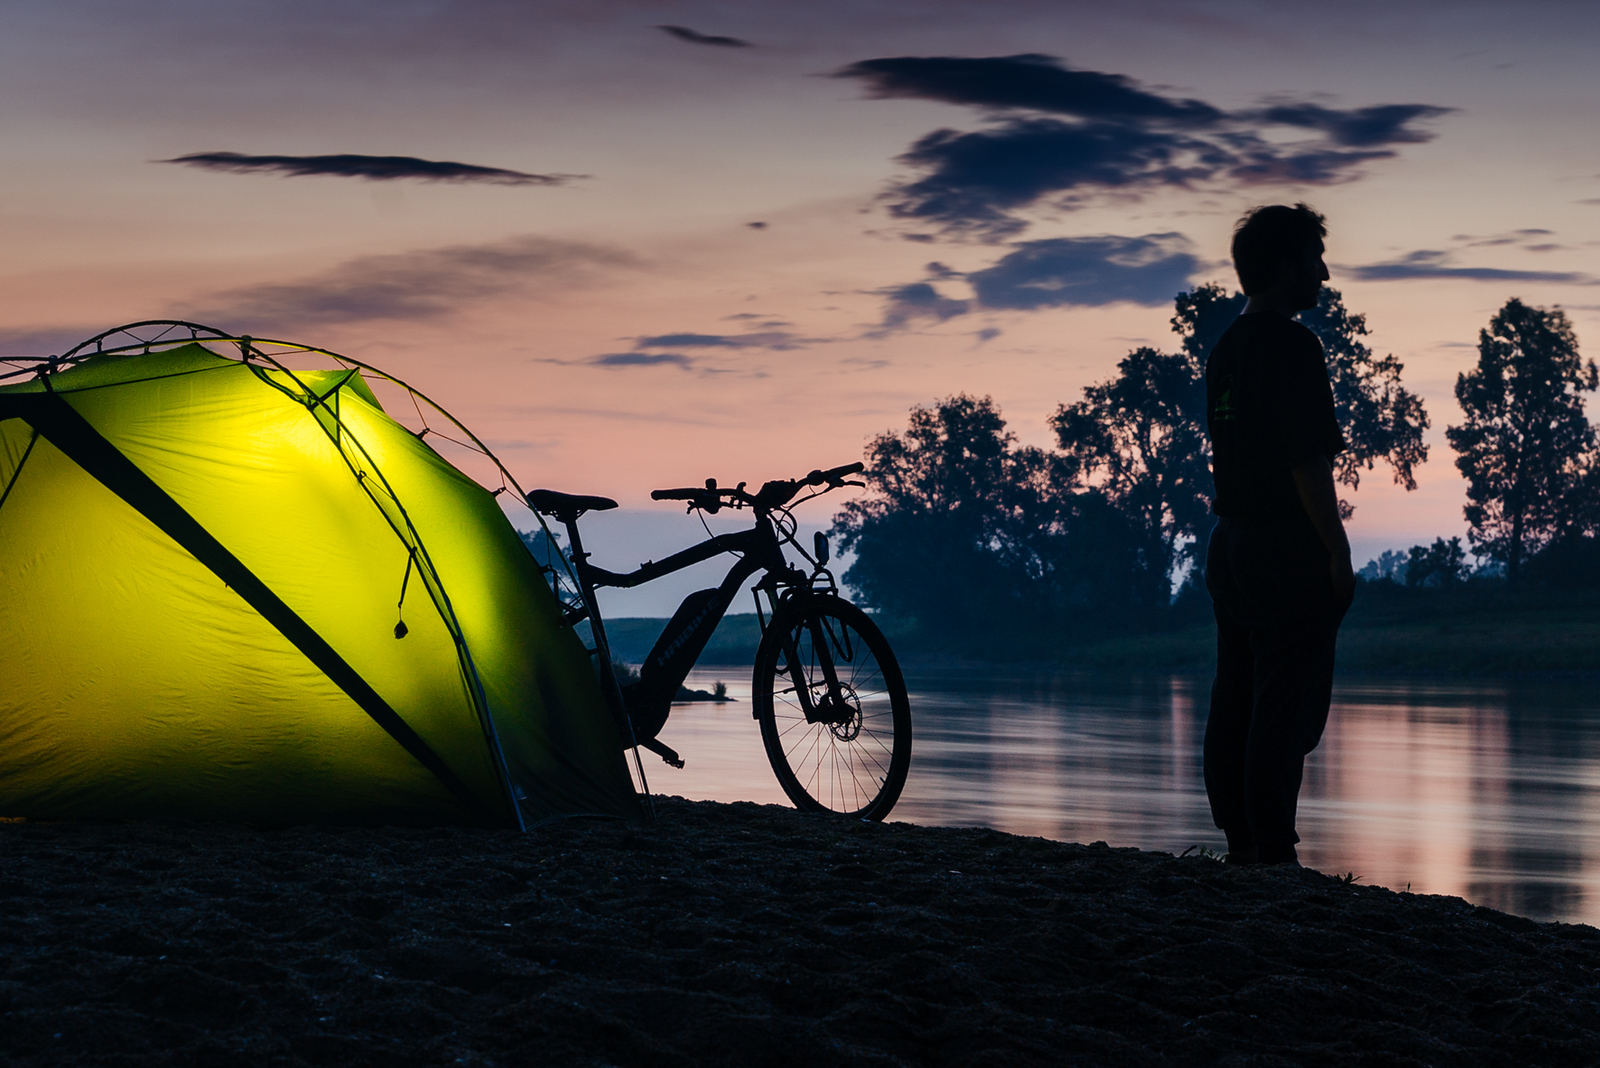 Mann neben beleuchtetem Zelt mit E-Bike am Fluß